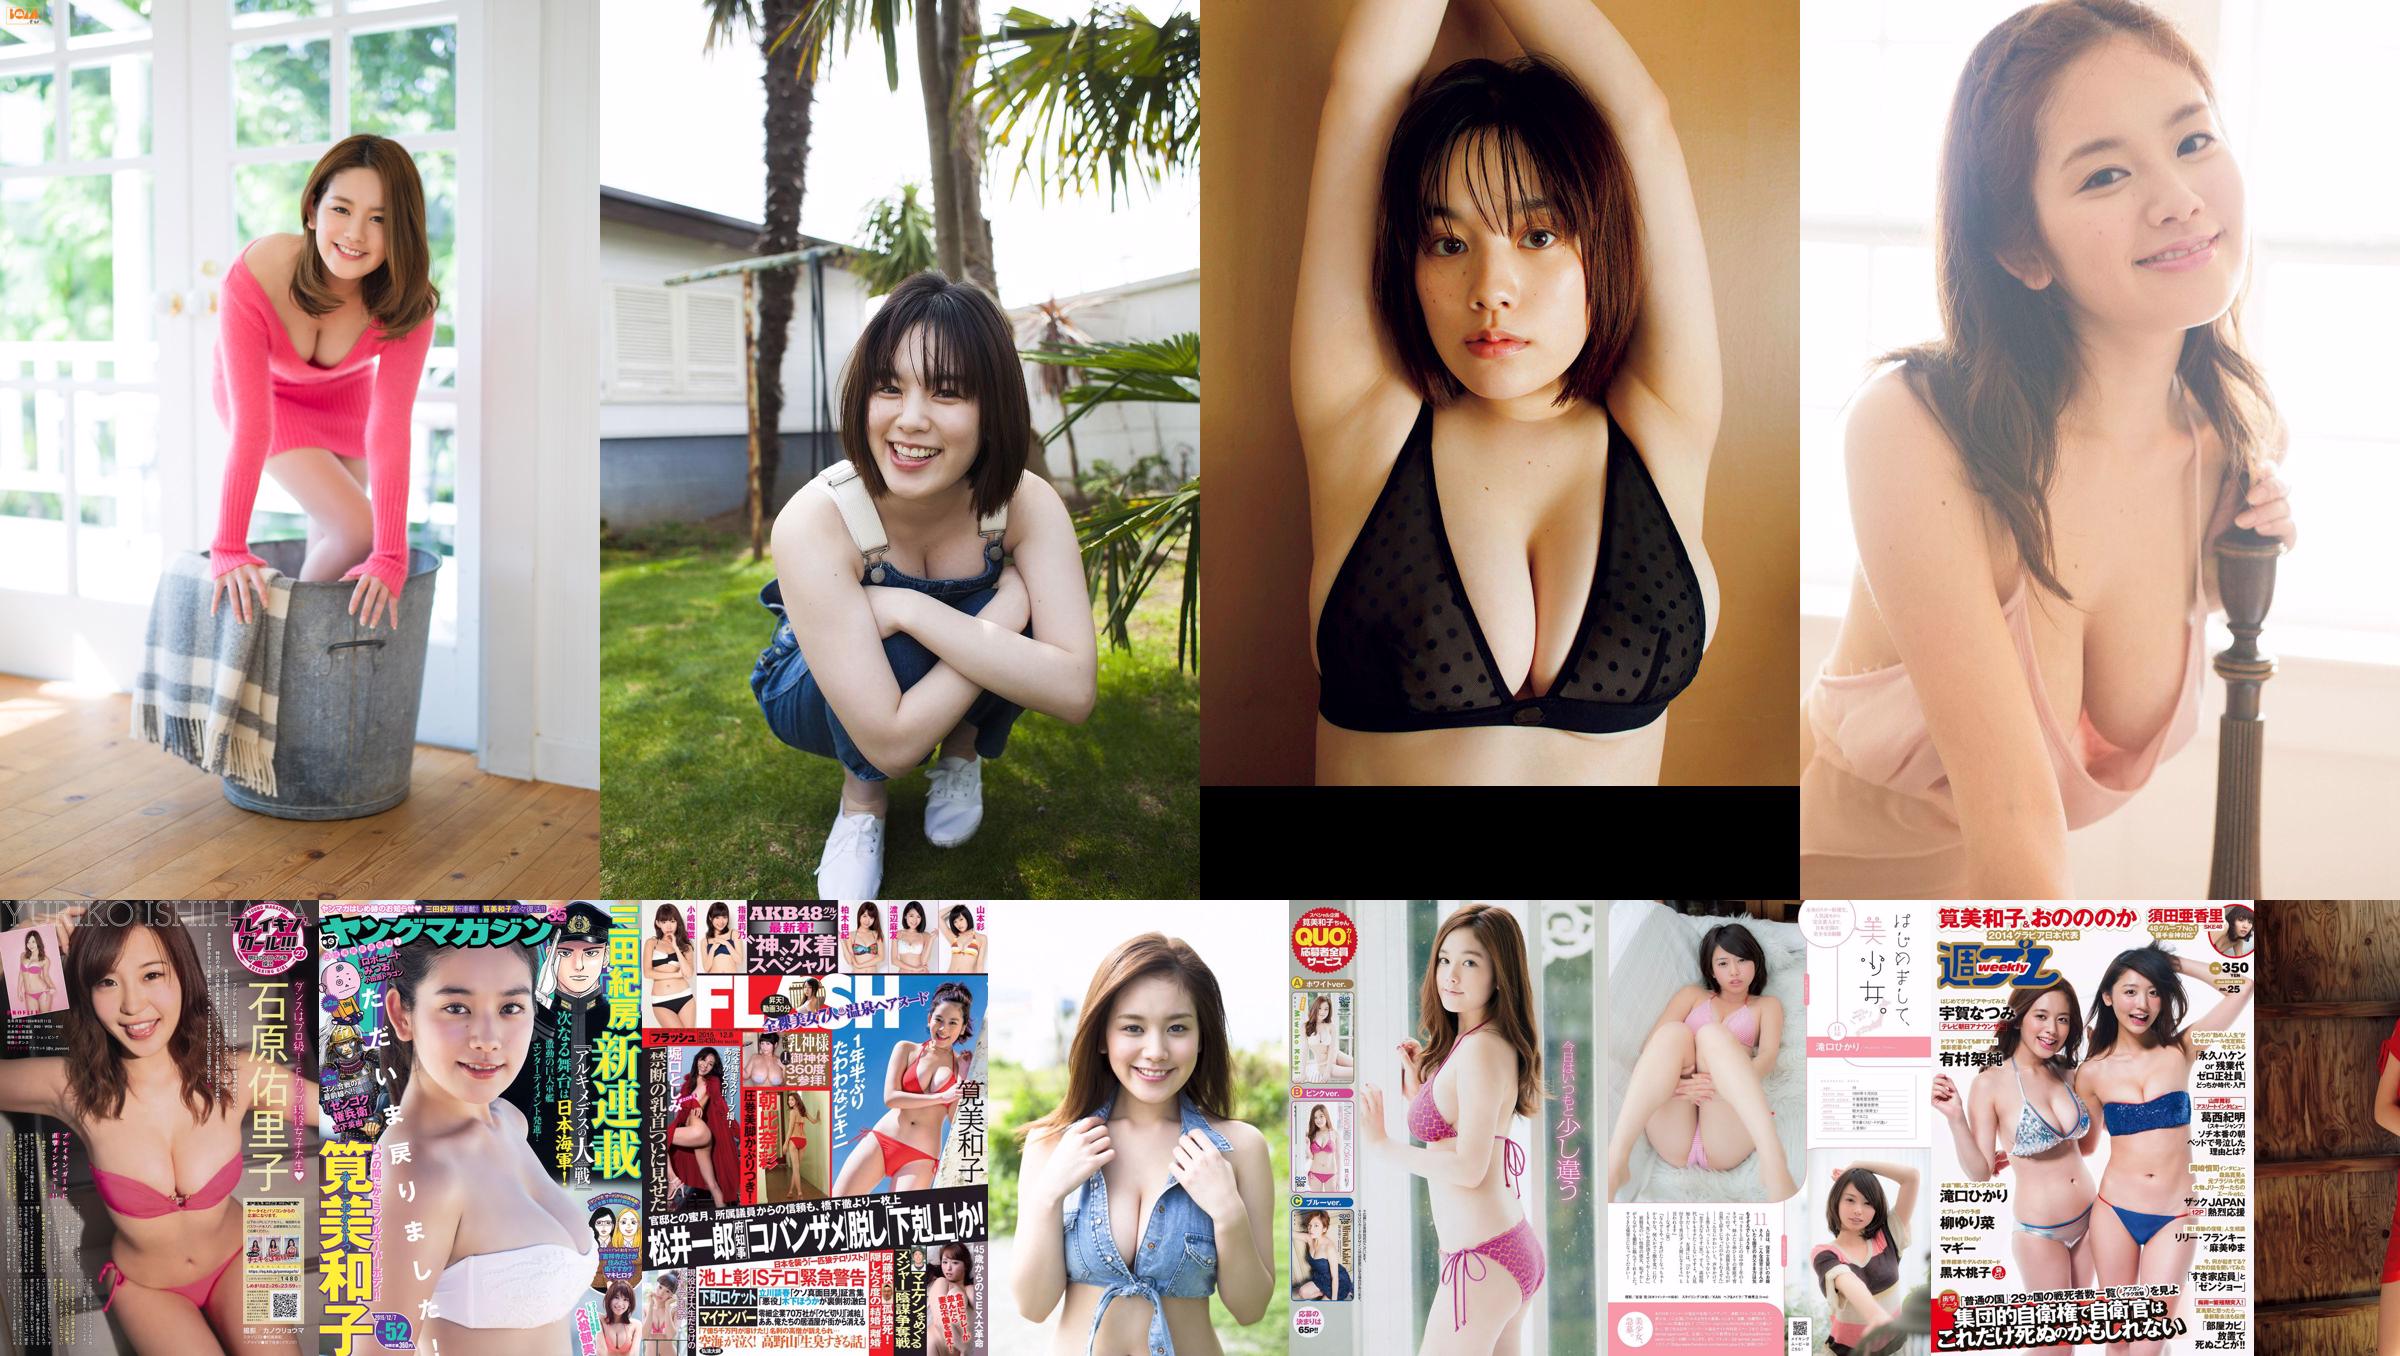 [Revista joven] Miwako Kakei Anna Konno Shizuka Nakamura Manami Marutaka Misaki Nito 2014 No.07 Fotografía No.3b52f1 Página 1